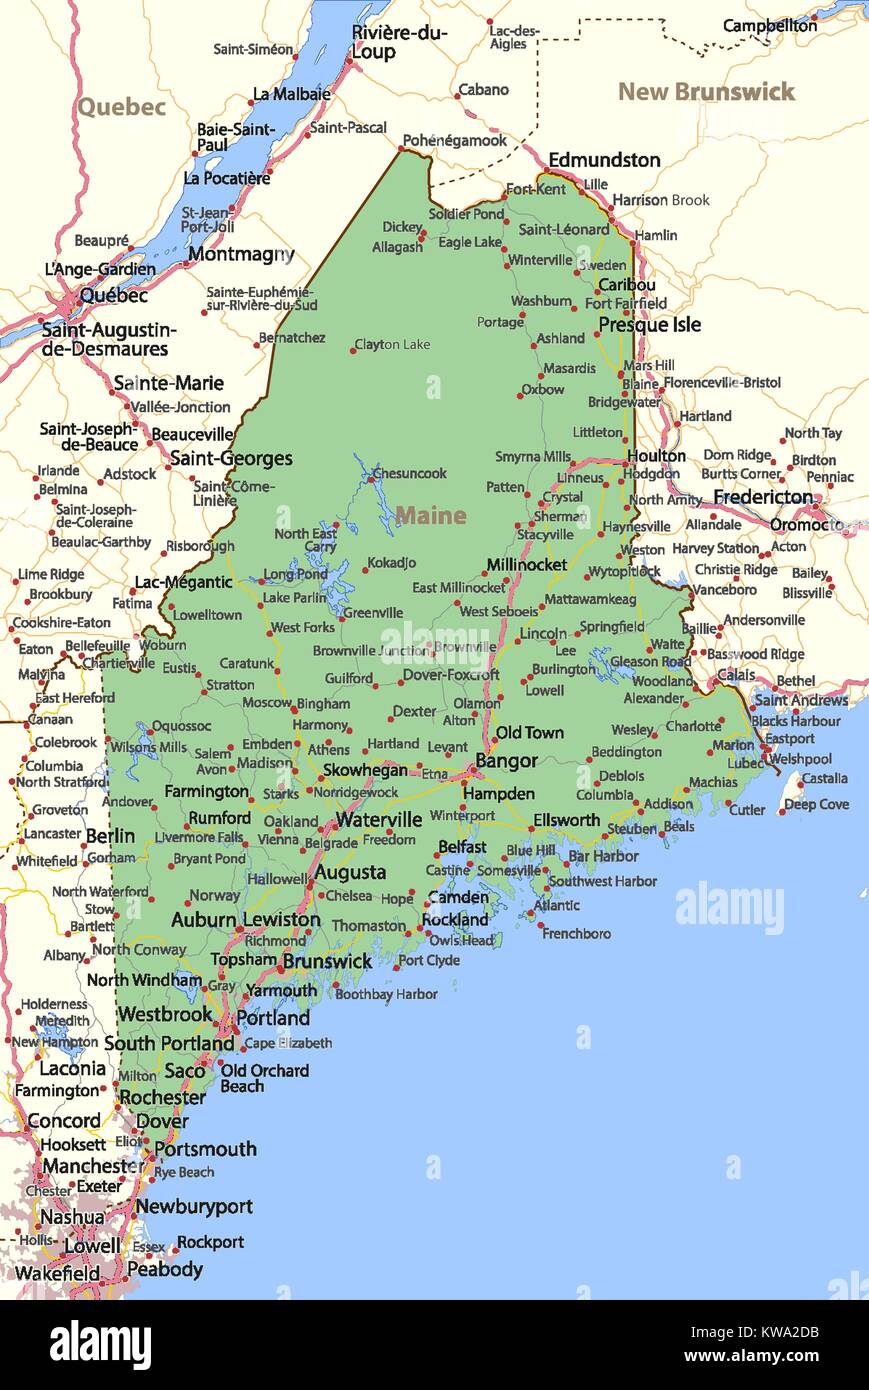 Mappa del Maine. Mostra i confini, zone urbane, nomi di località, strade e autostrade. Proiezione: proiezione di Mercatore. Illustrazione Vettoriale